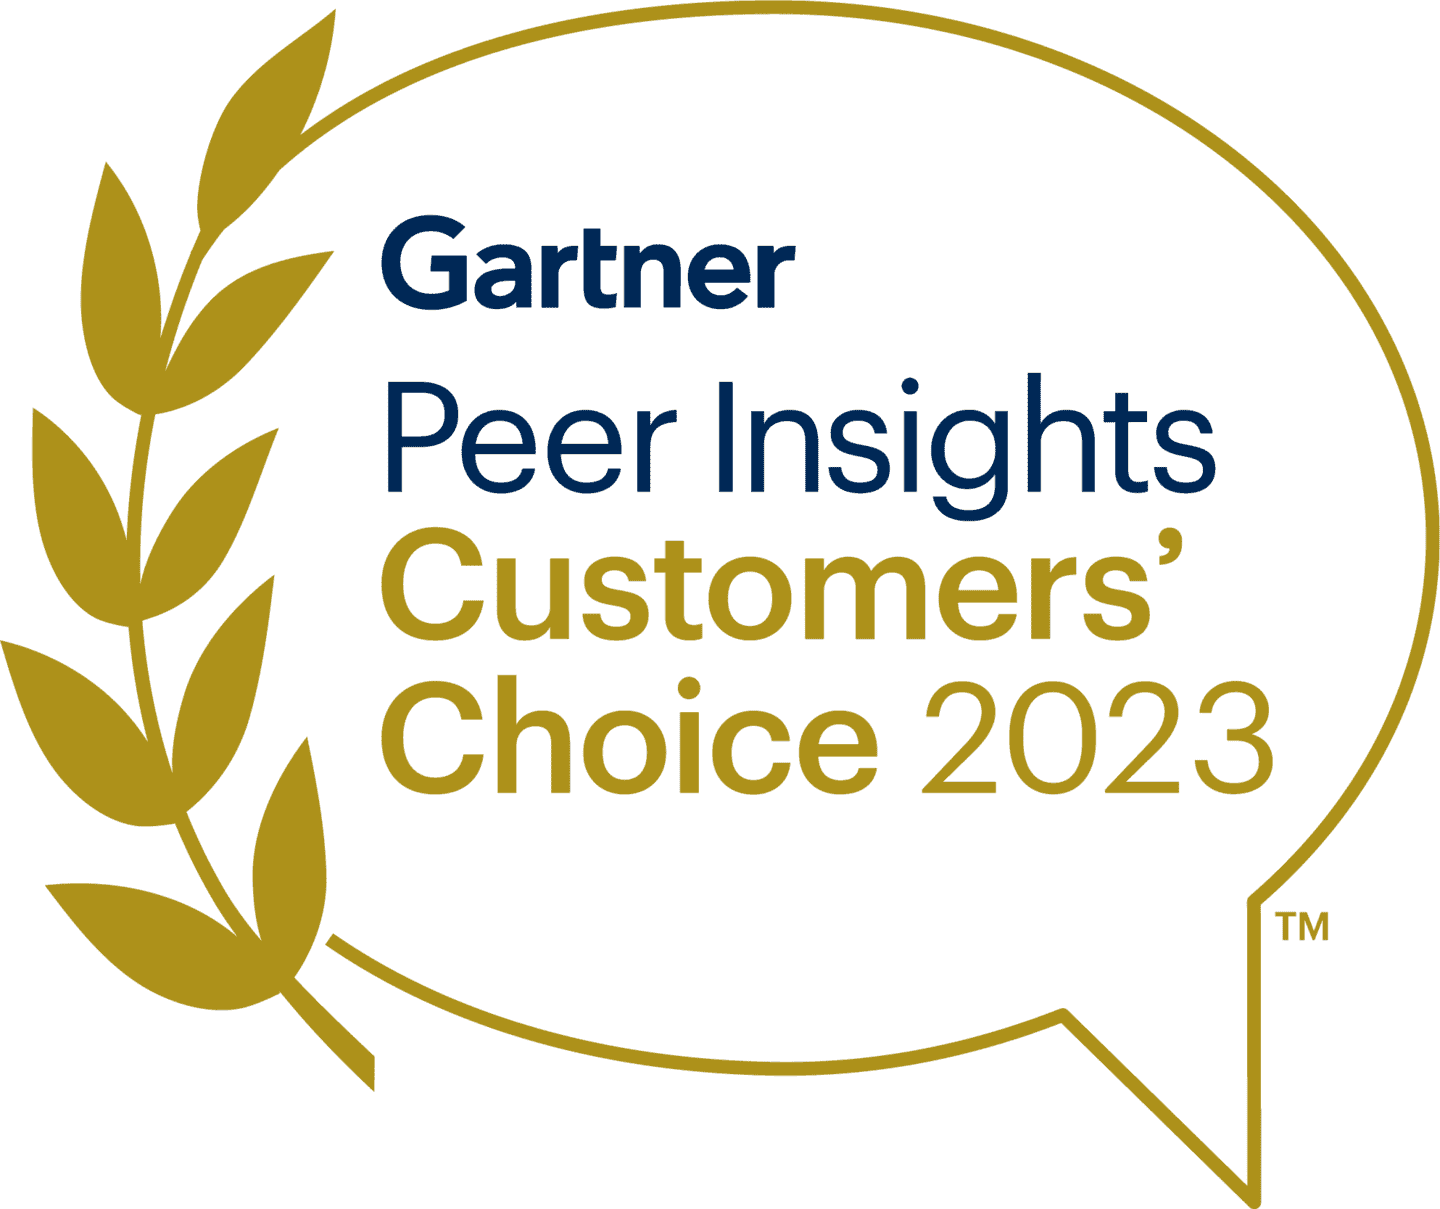 Gartner Peer Insights Customer Choice 2023 Logo